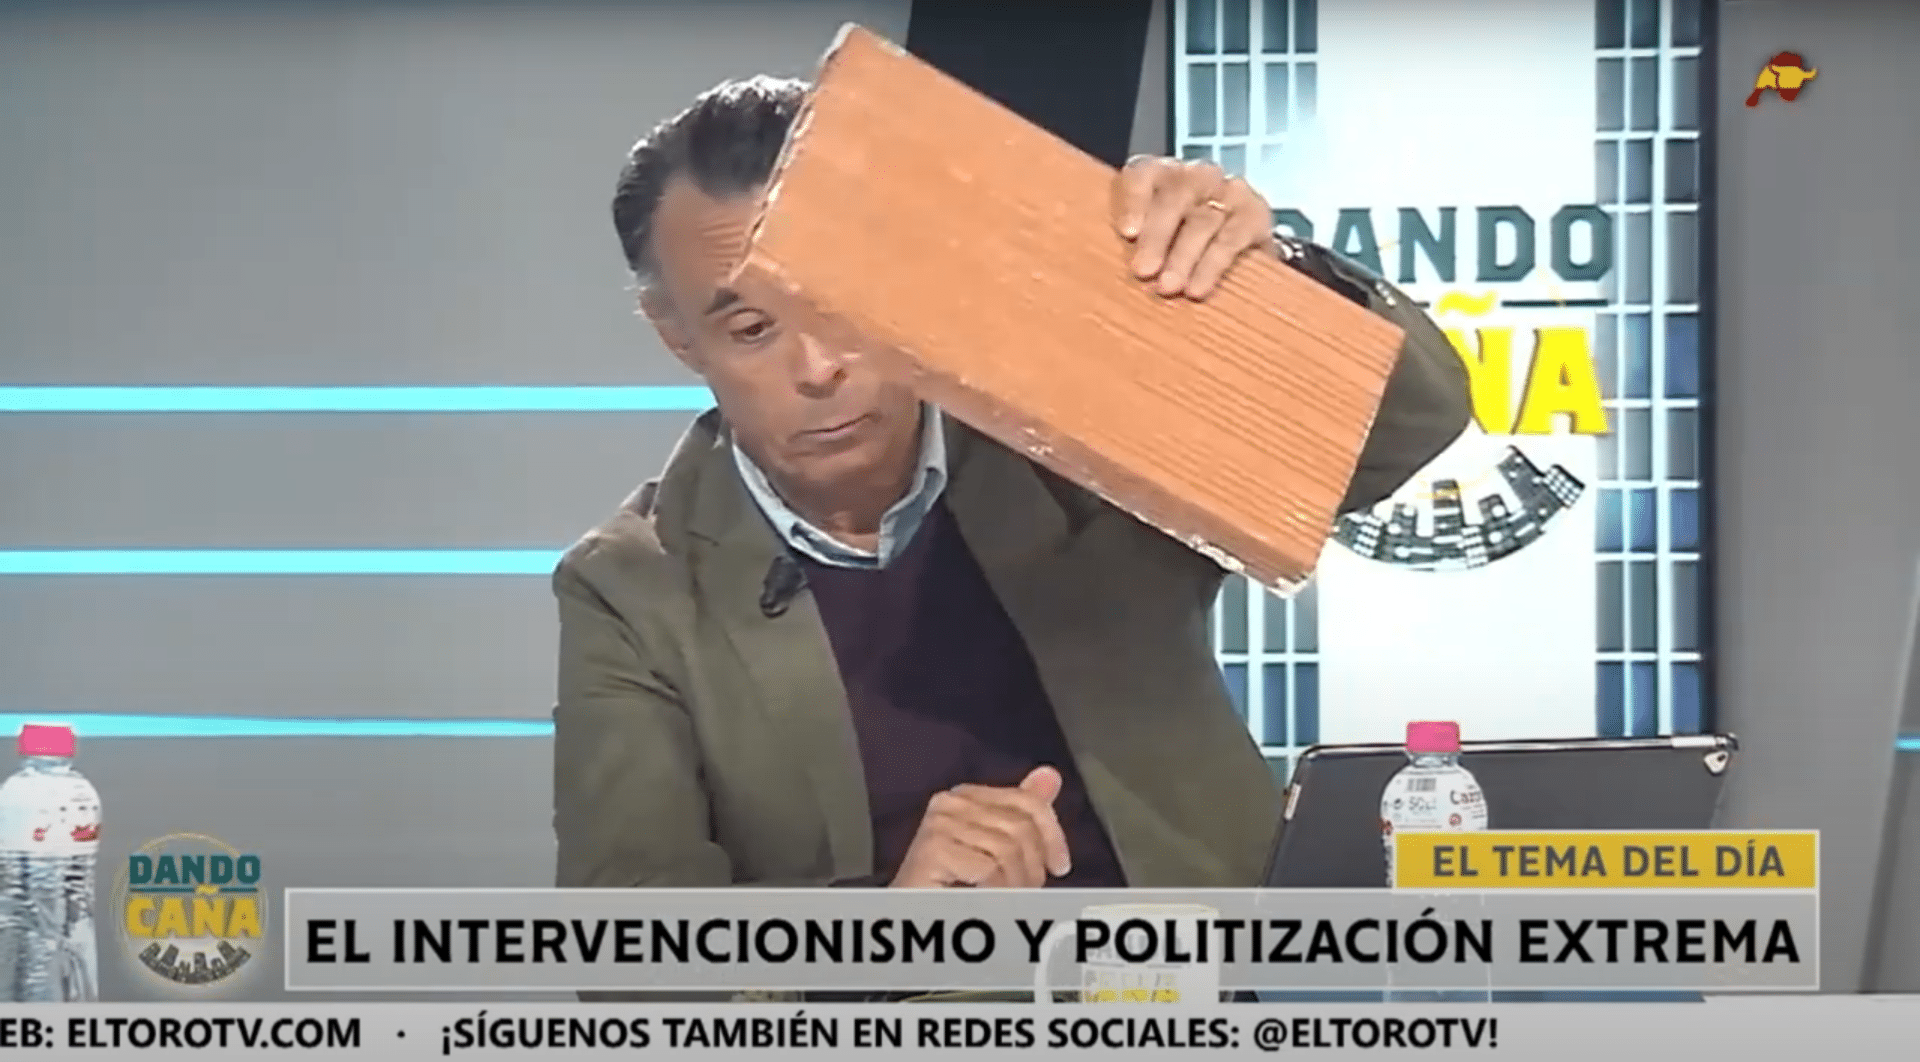  Un tertuliano saca un ladrillo en directo para pedir un MURO para DEFENDERNOS de Pedro Sánchez